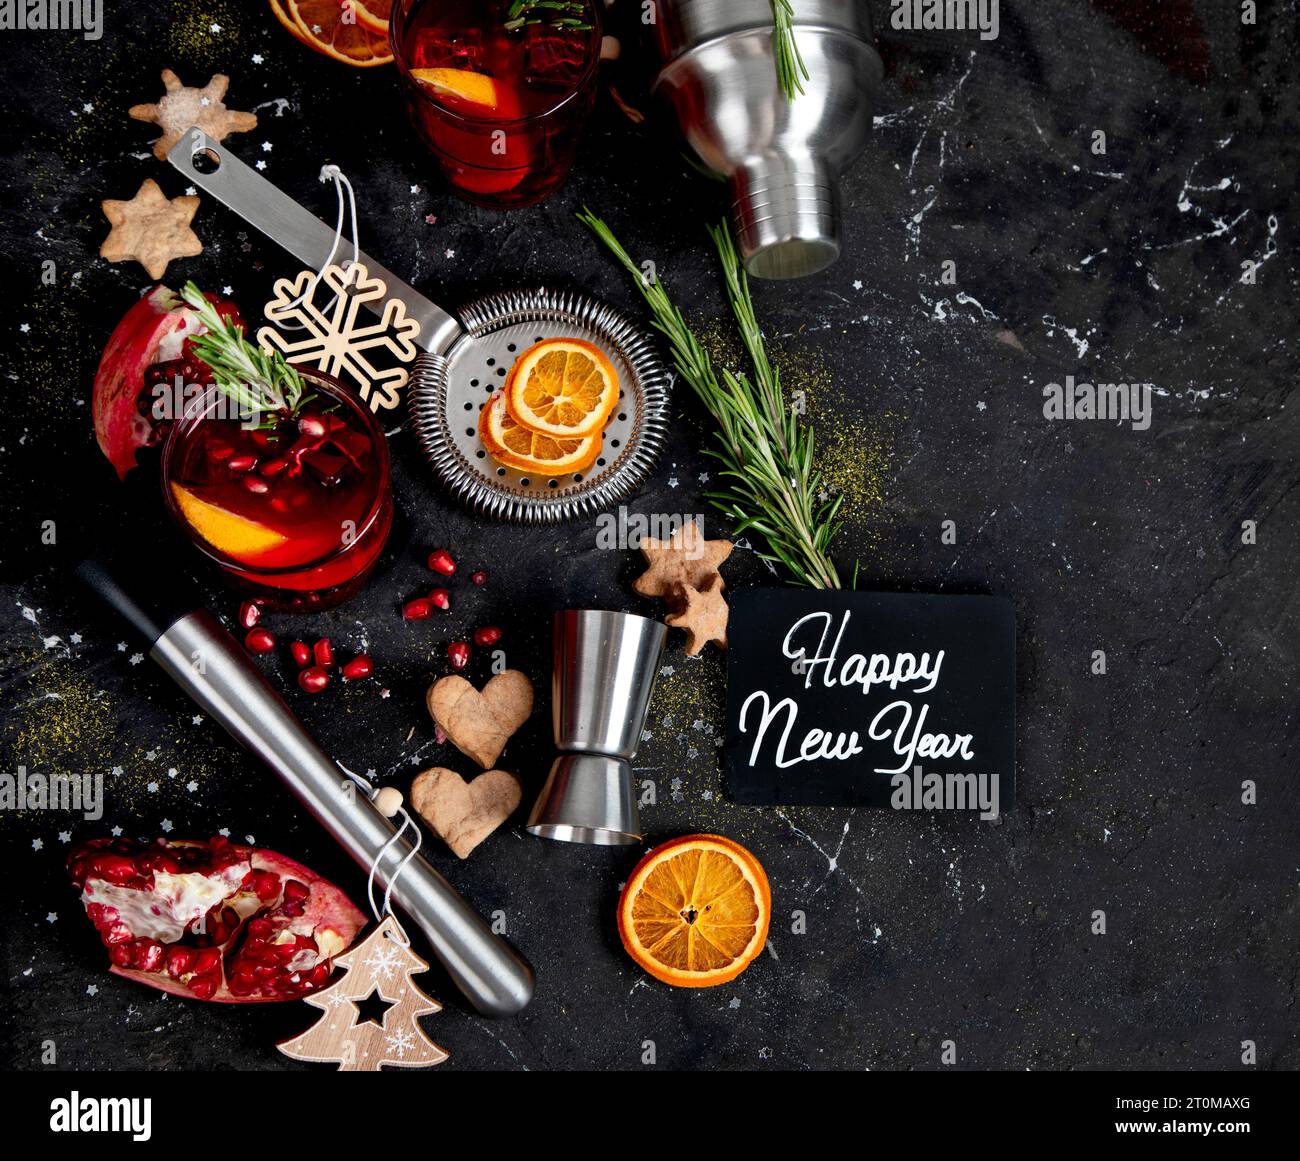 Winter-weihnachtscocktail mit Granatapfel und Rosmarin in einem Glas auf schwarzem Hintergrund. Draufsicht. Stockfoto